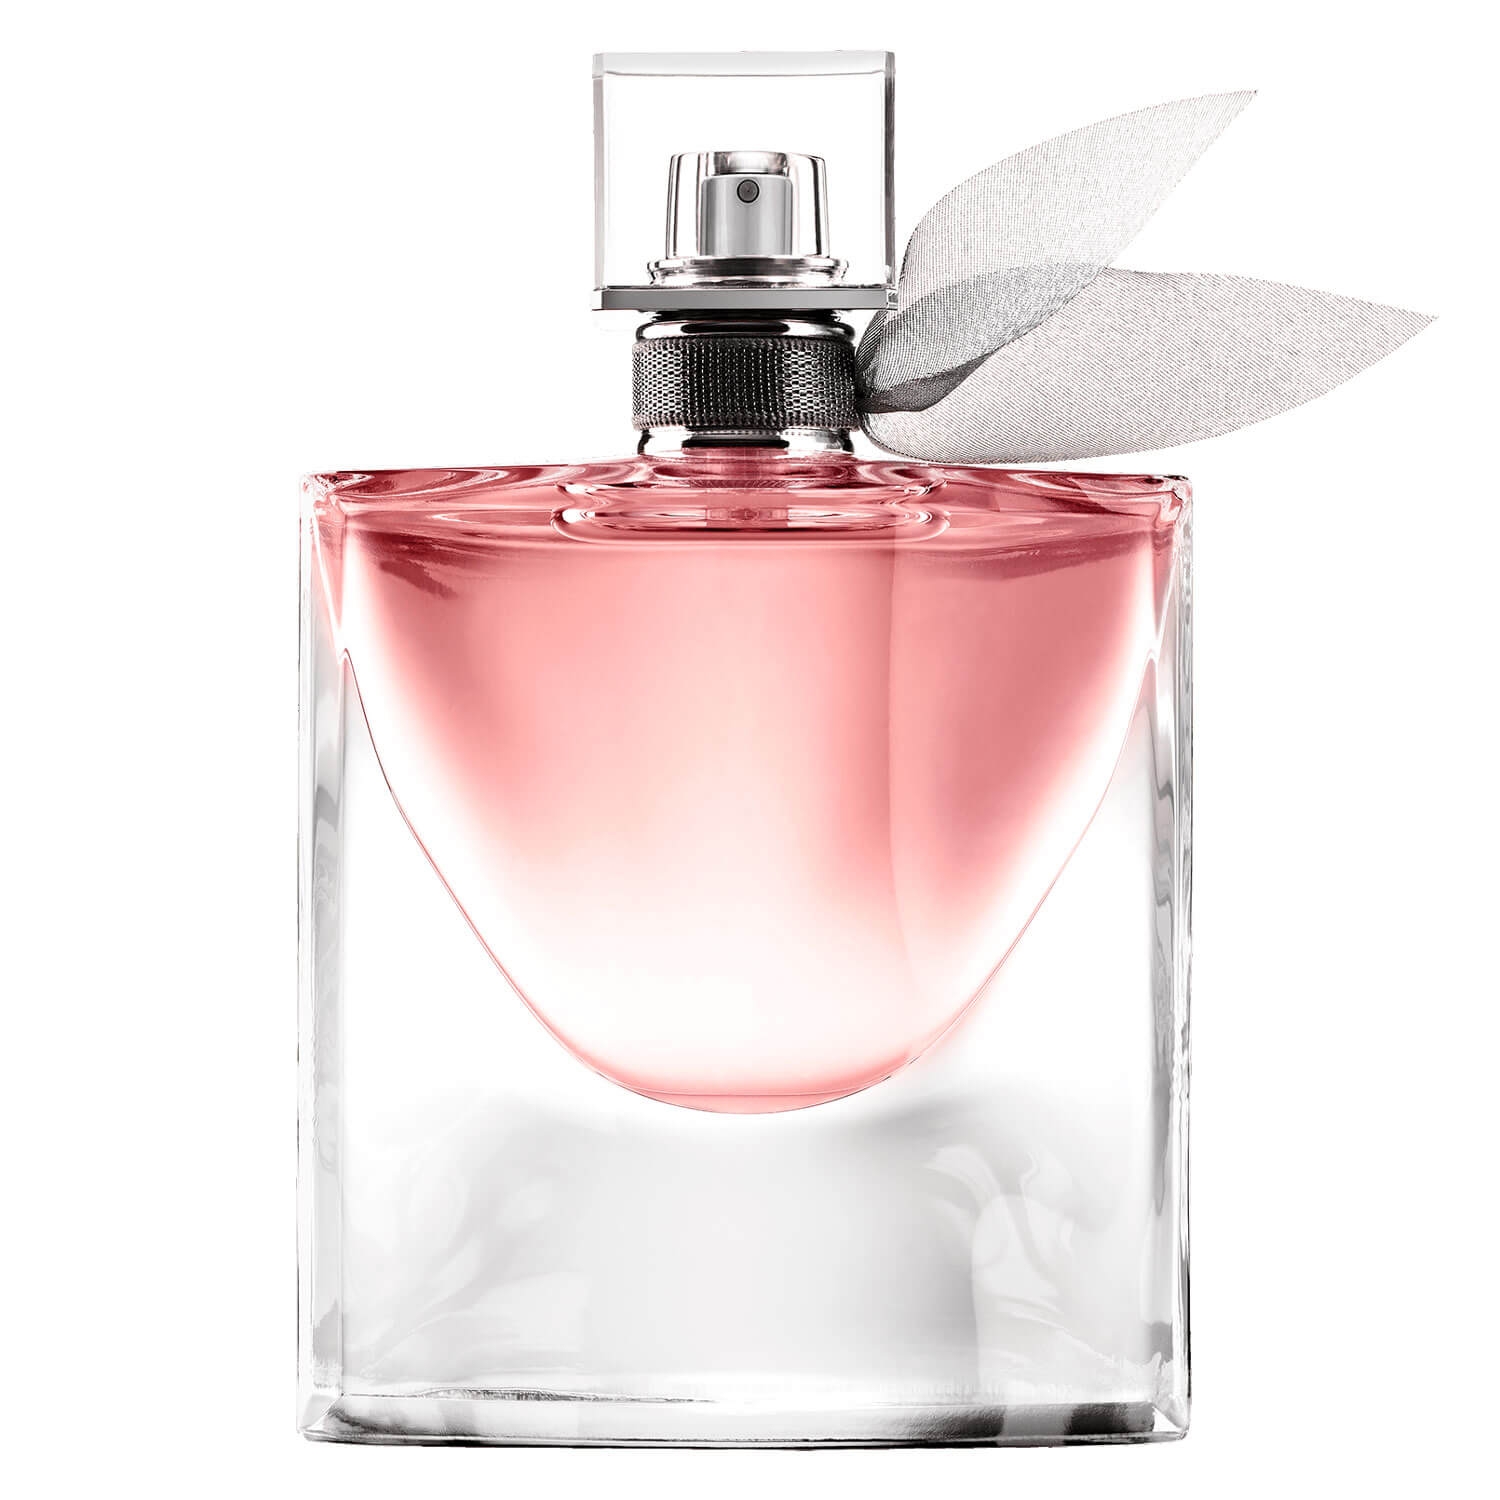 Product image from La Vie est Belle - Eau de Parfum